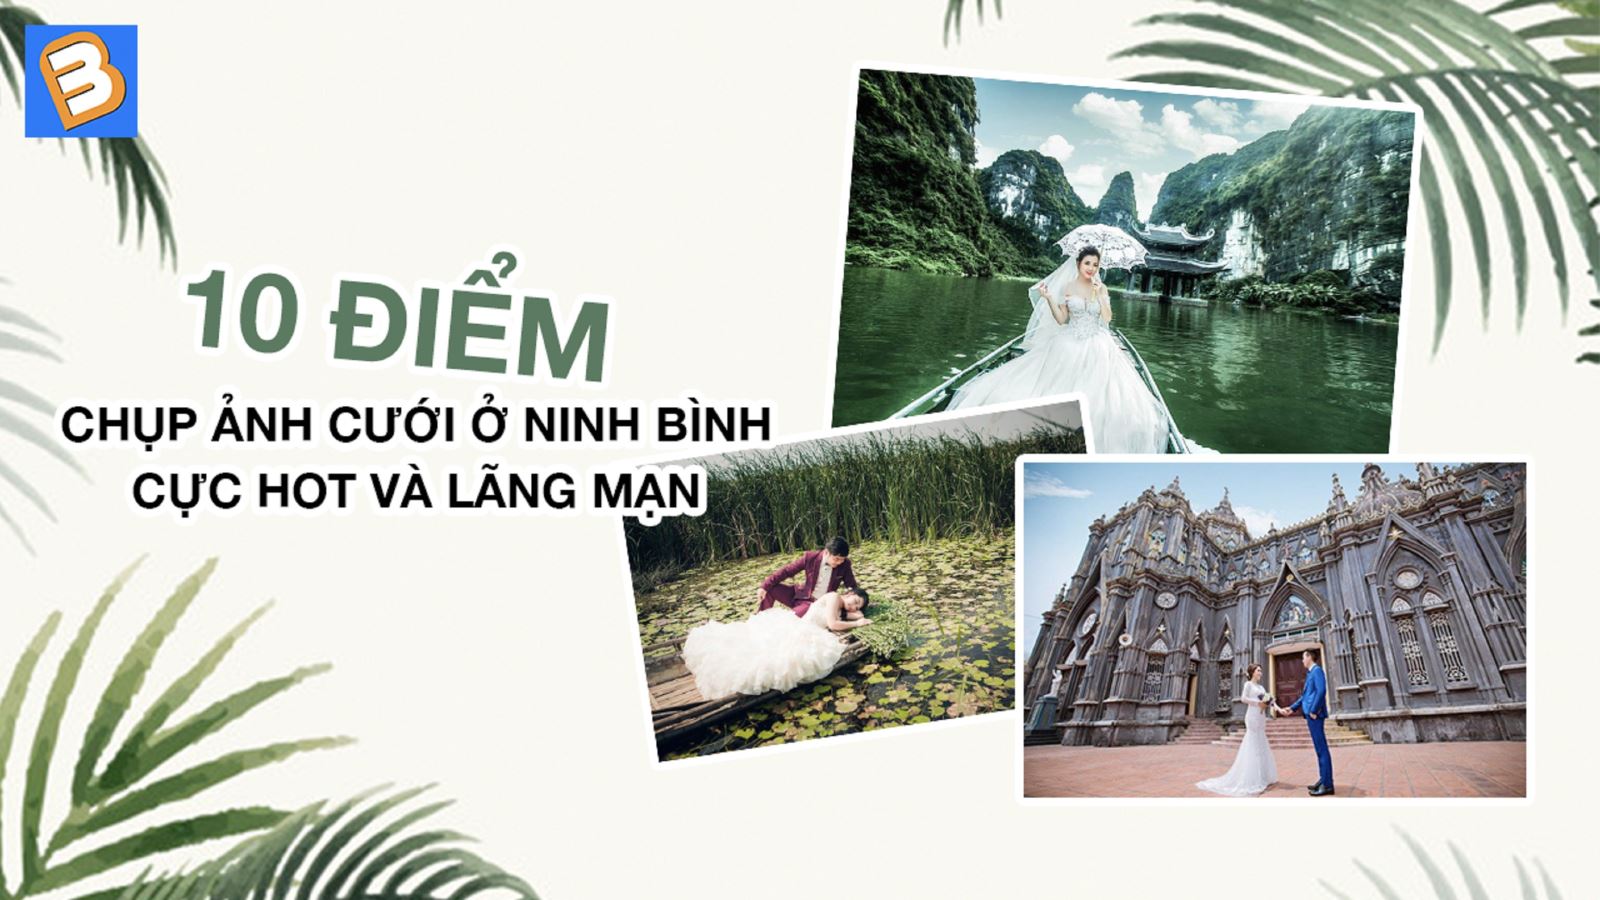 10 địa điểm chụp ảnh cưới ở Ninh Bình cực hot và lãng mạn